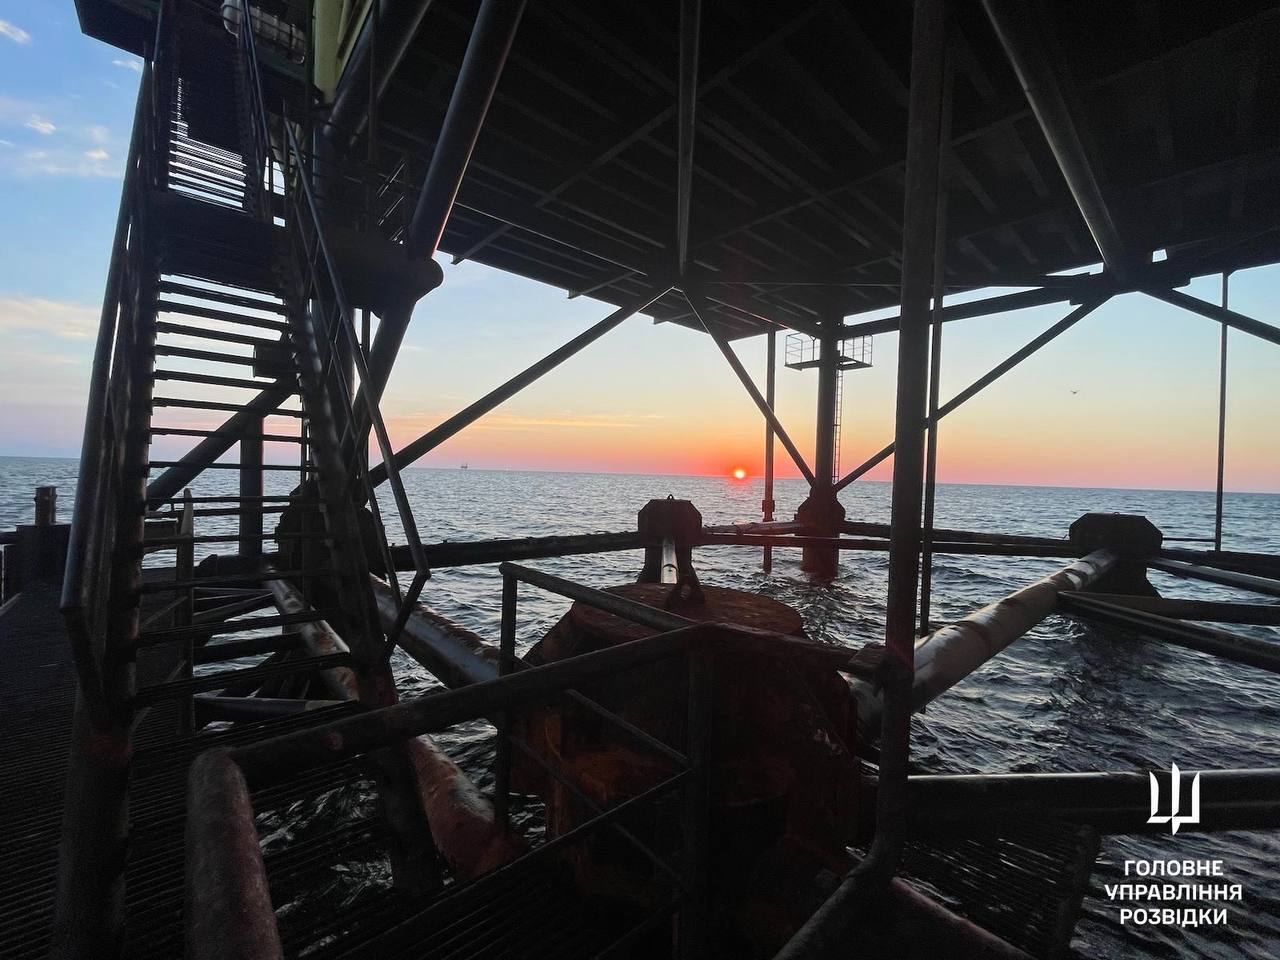 Документальні фото щодо спецоперації на газовидобувних платформах у Чорному морі